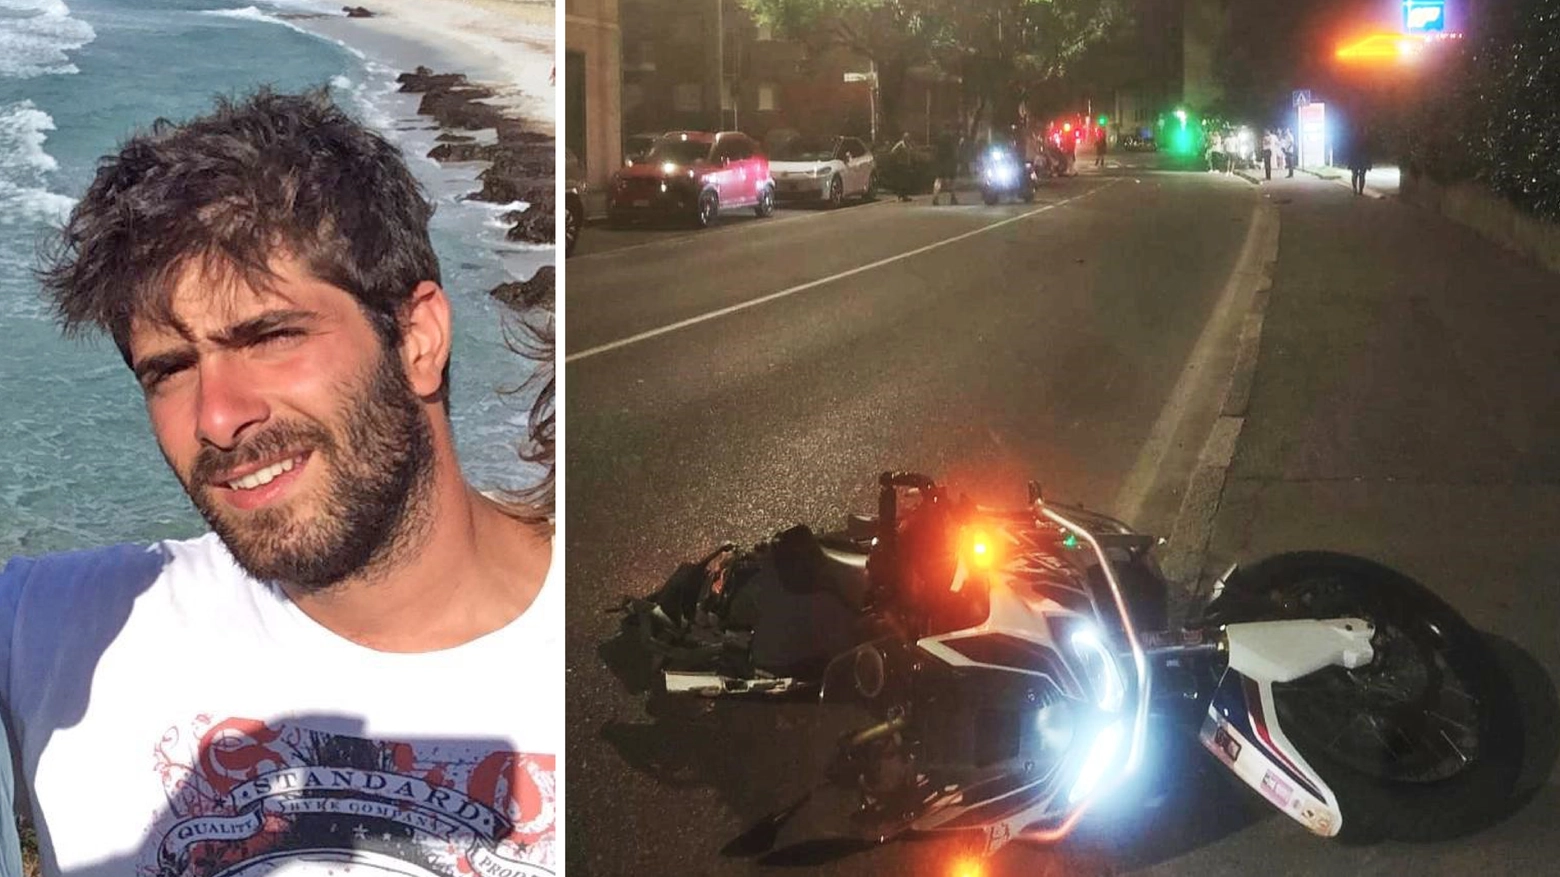 Andrea Dall'Ara e la sua moto, dopo l'incidente in via Broseta, a Milano